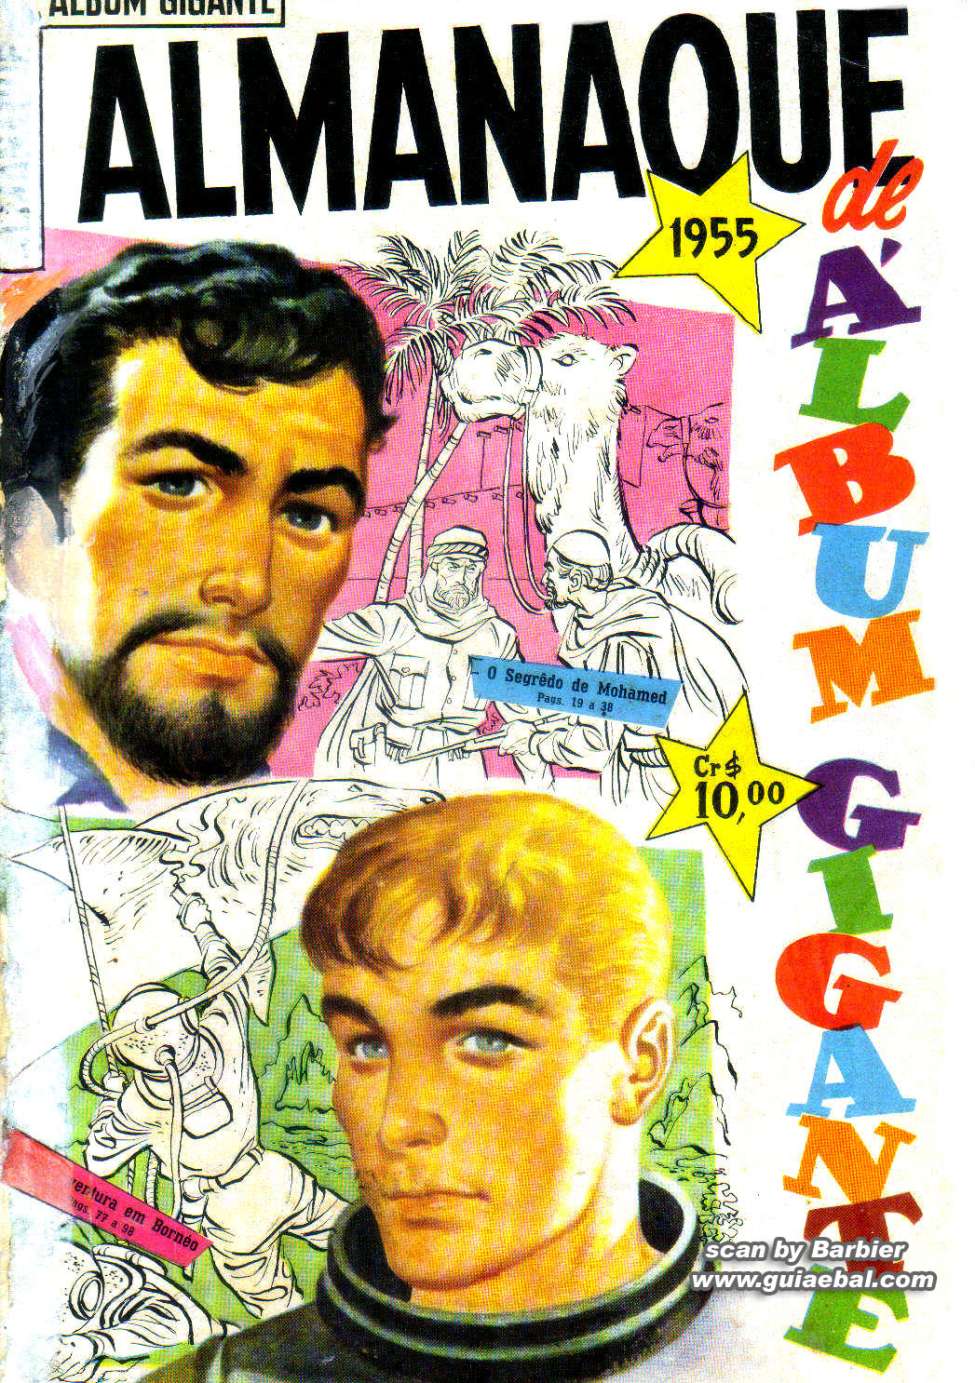 Book Cover For Almanaque Album Gigante 1955 - A Caravana do Oeste